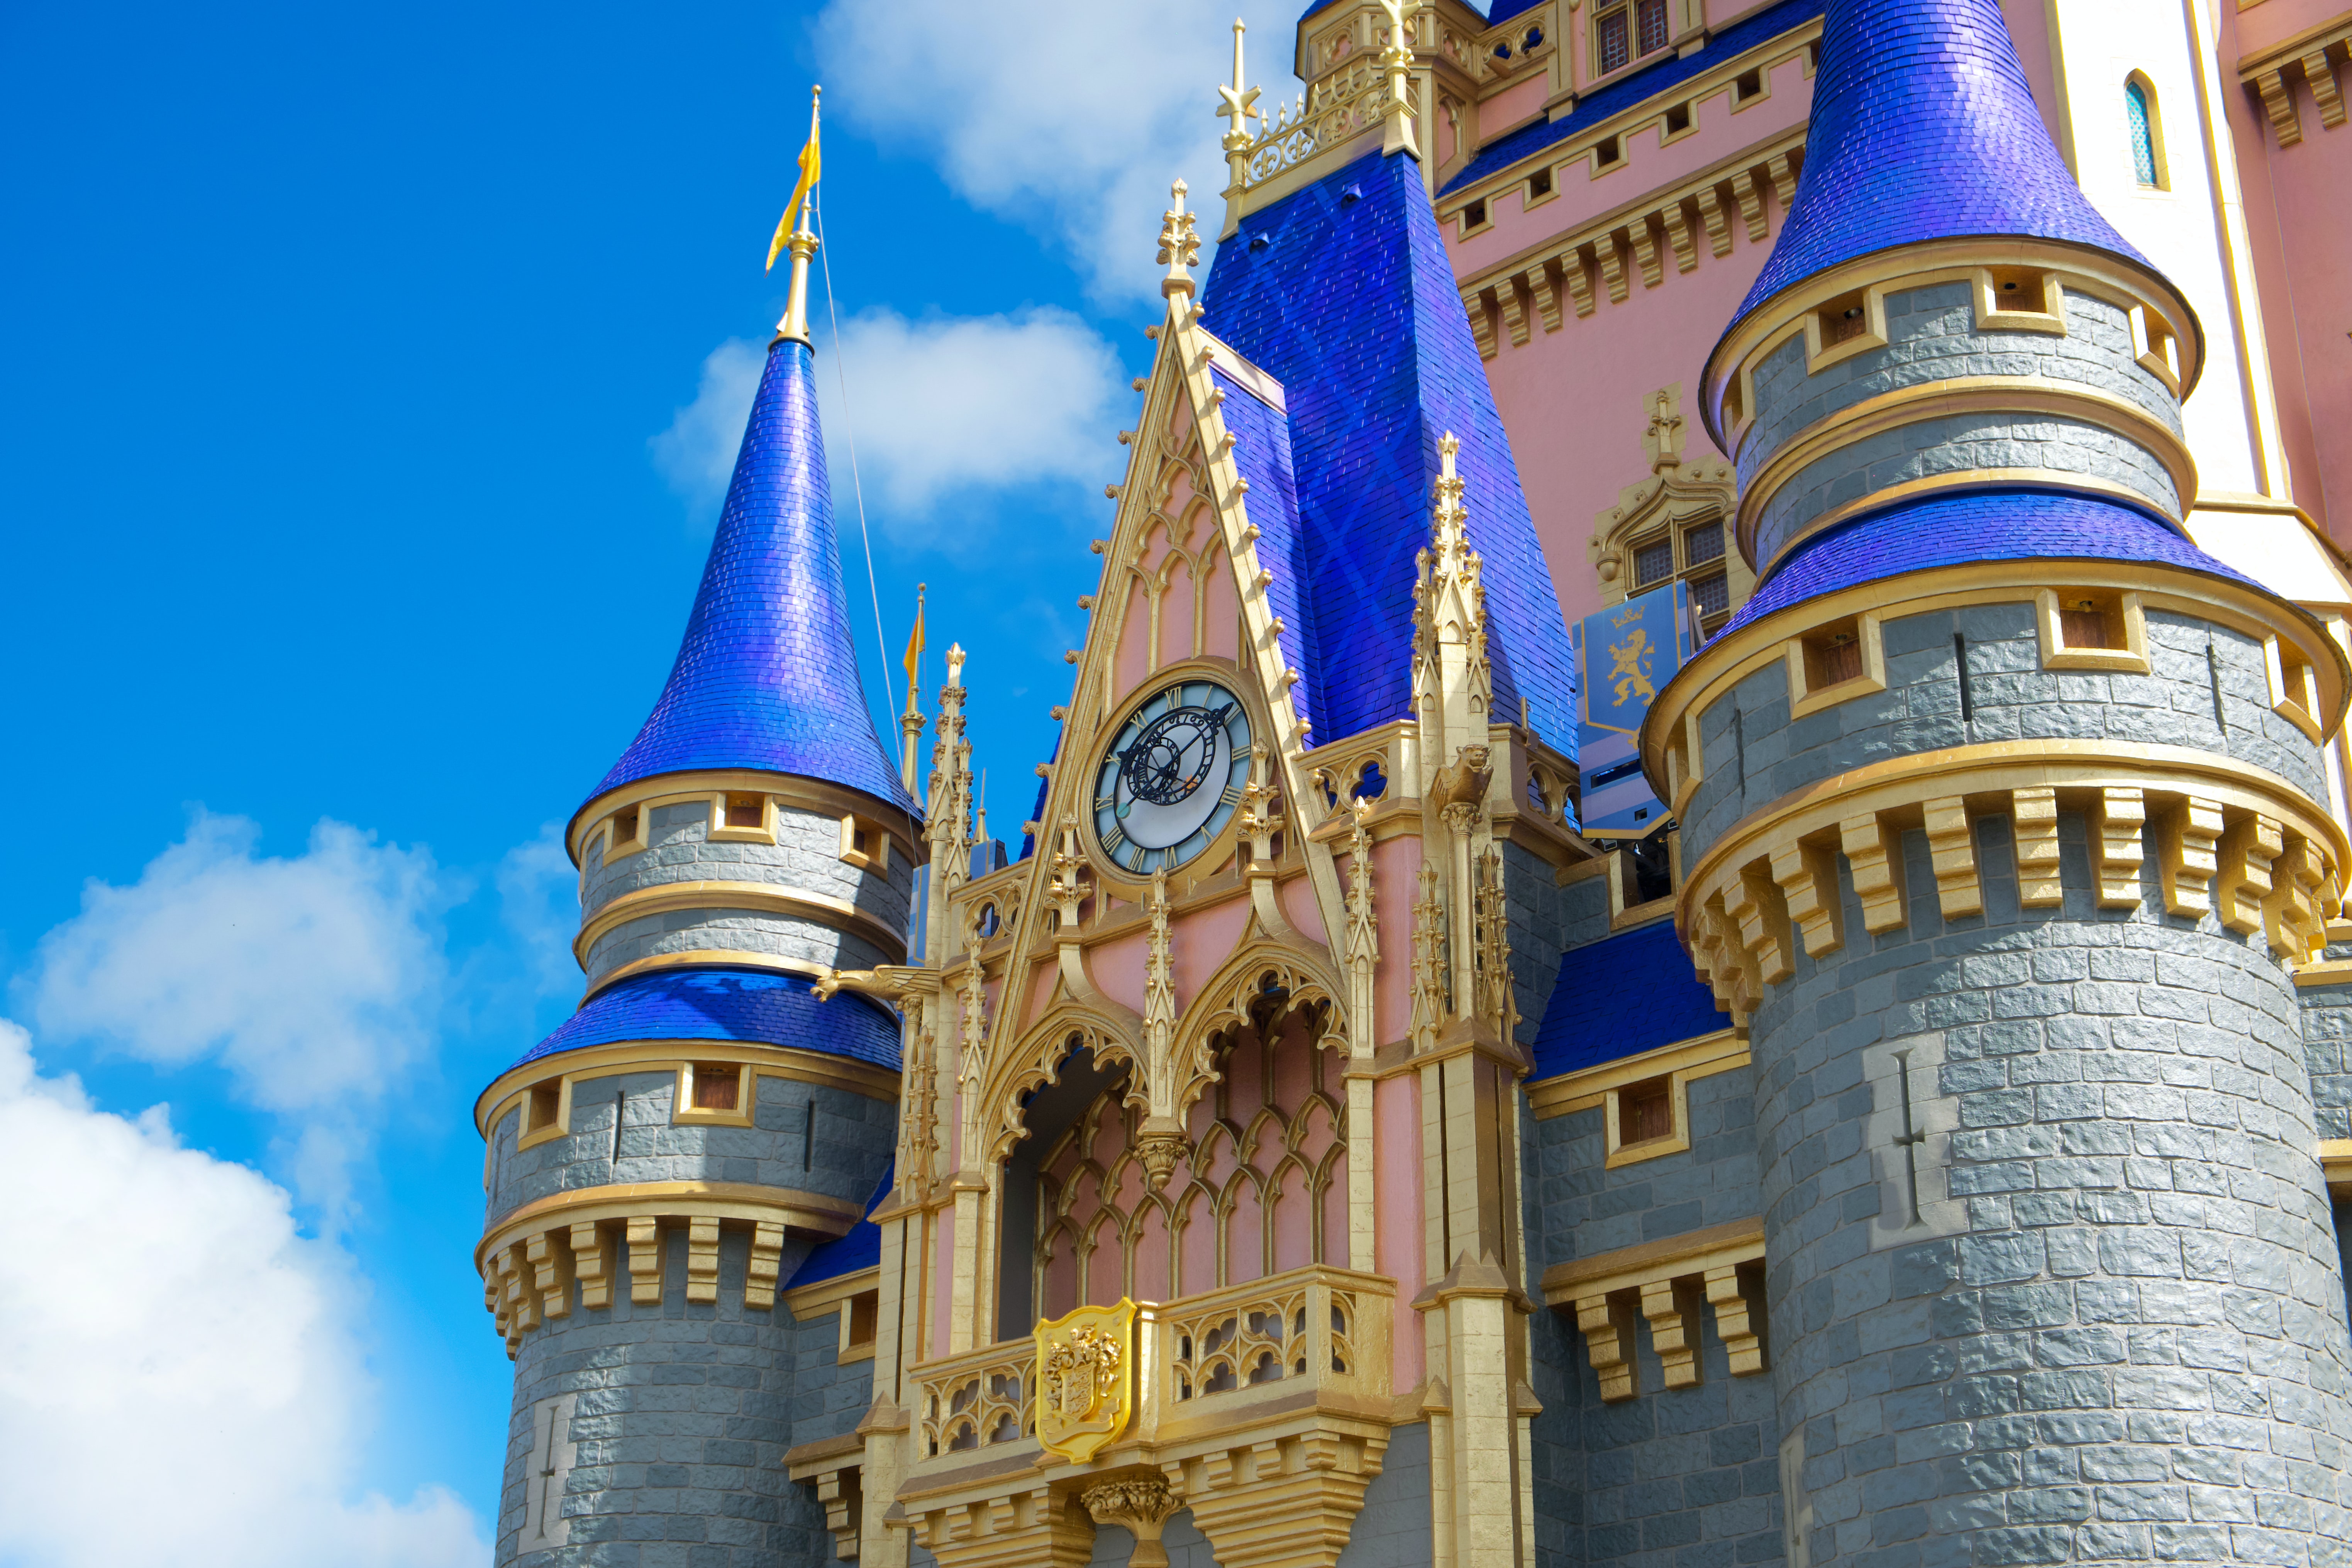 Disneyland Paris Castle. Facts. History. Visit.